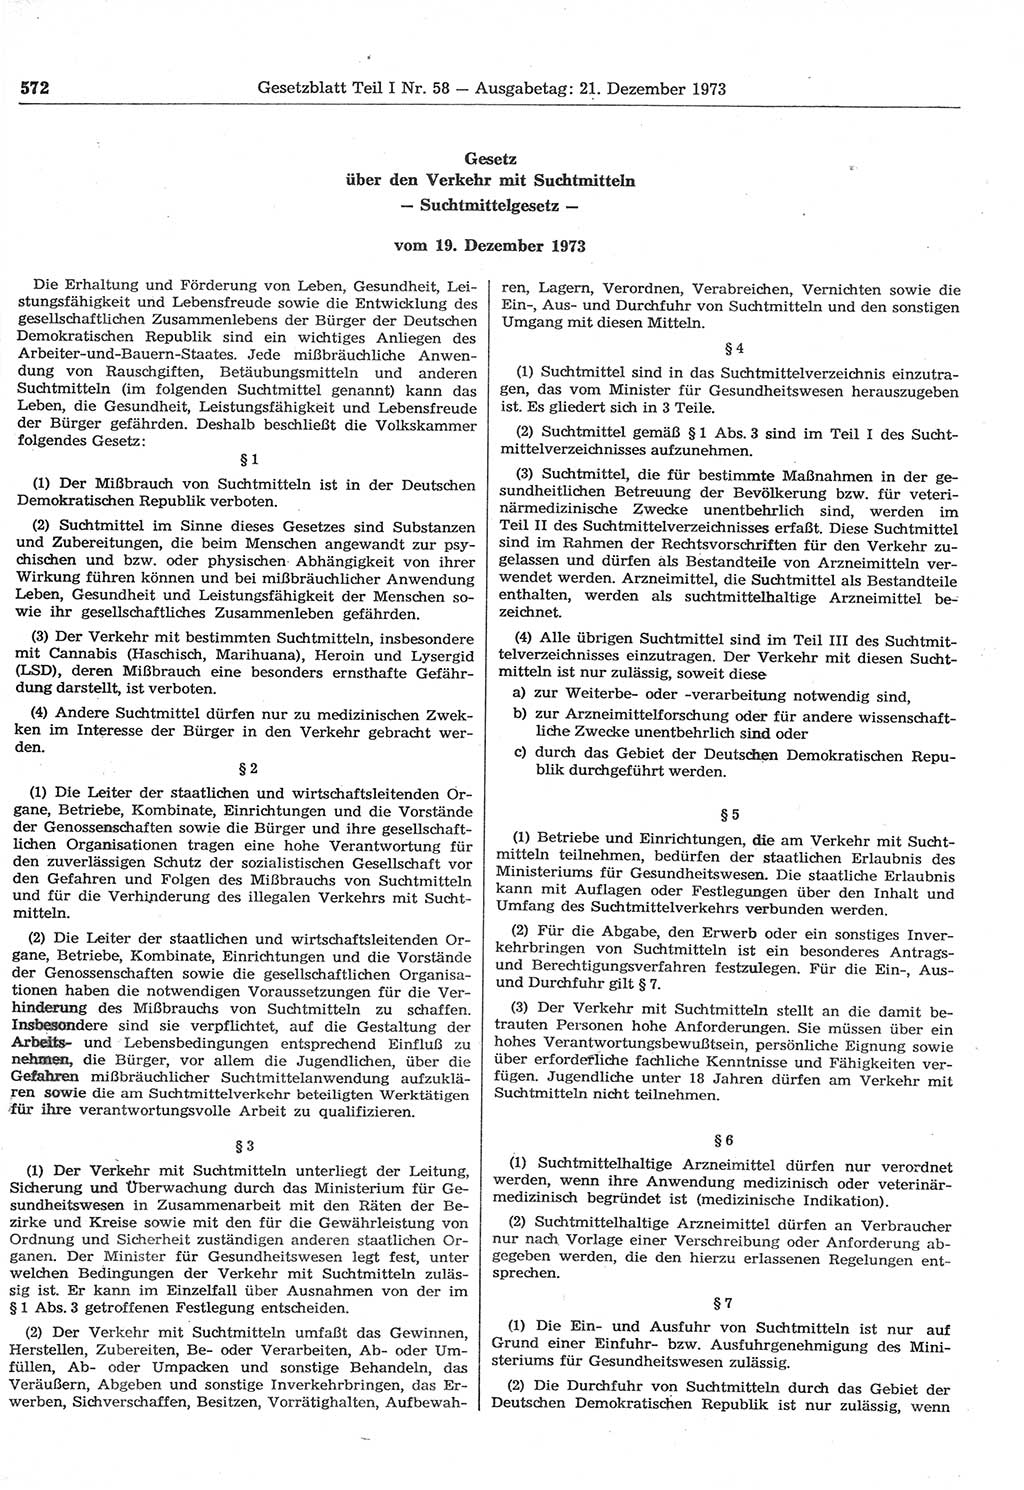 Gesetzblatt (GBl.) der Deutschen Demokratischen Republik (DDR) Teil Ⅰ 1973, Seite 572 (GBl. DDR Ⅰ 1973, S. 572)